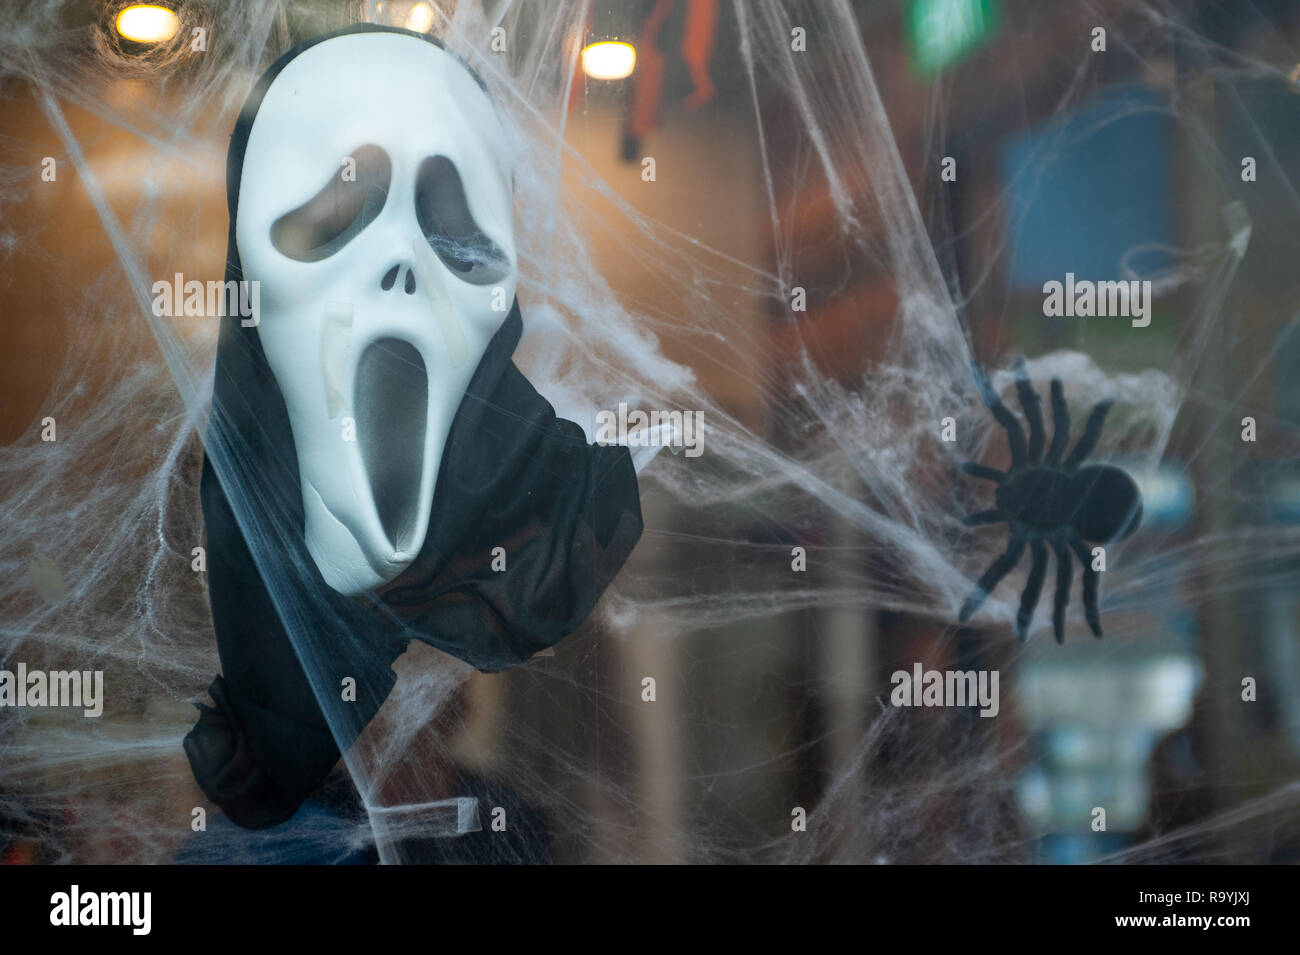 27.10.2018, Singapore, Republik Singapur, Asien - Eine Scream-Maske Spinnenattrappe und eine als haengen Halloweendekoraton in einem Schaufenster. 0SL1 Banque D'Images